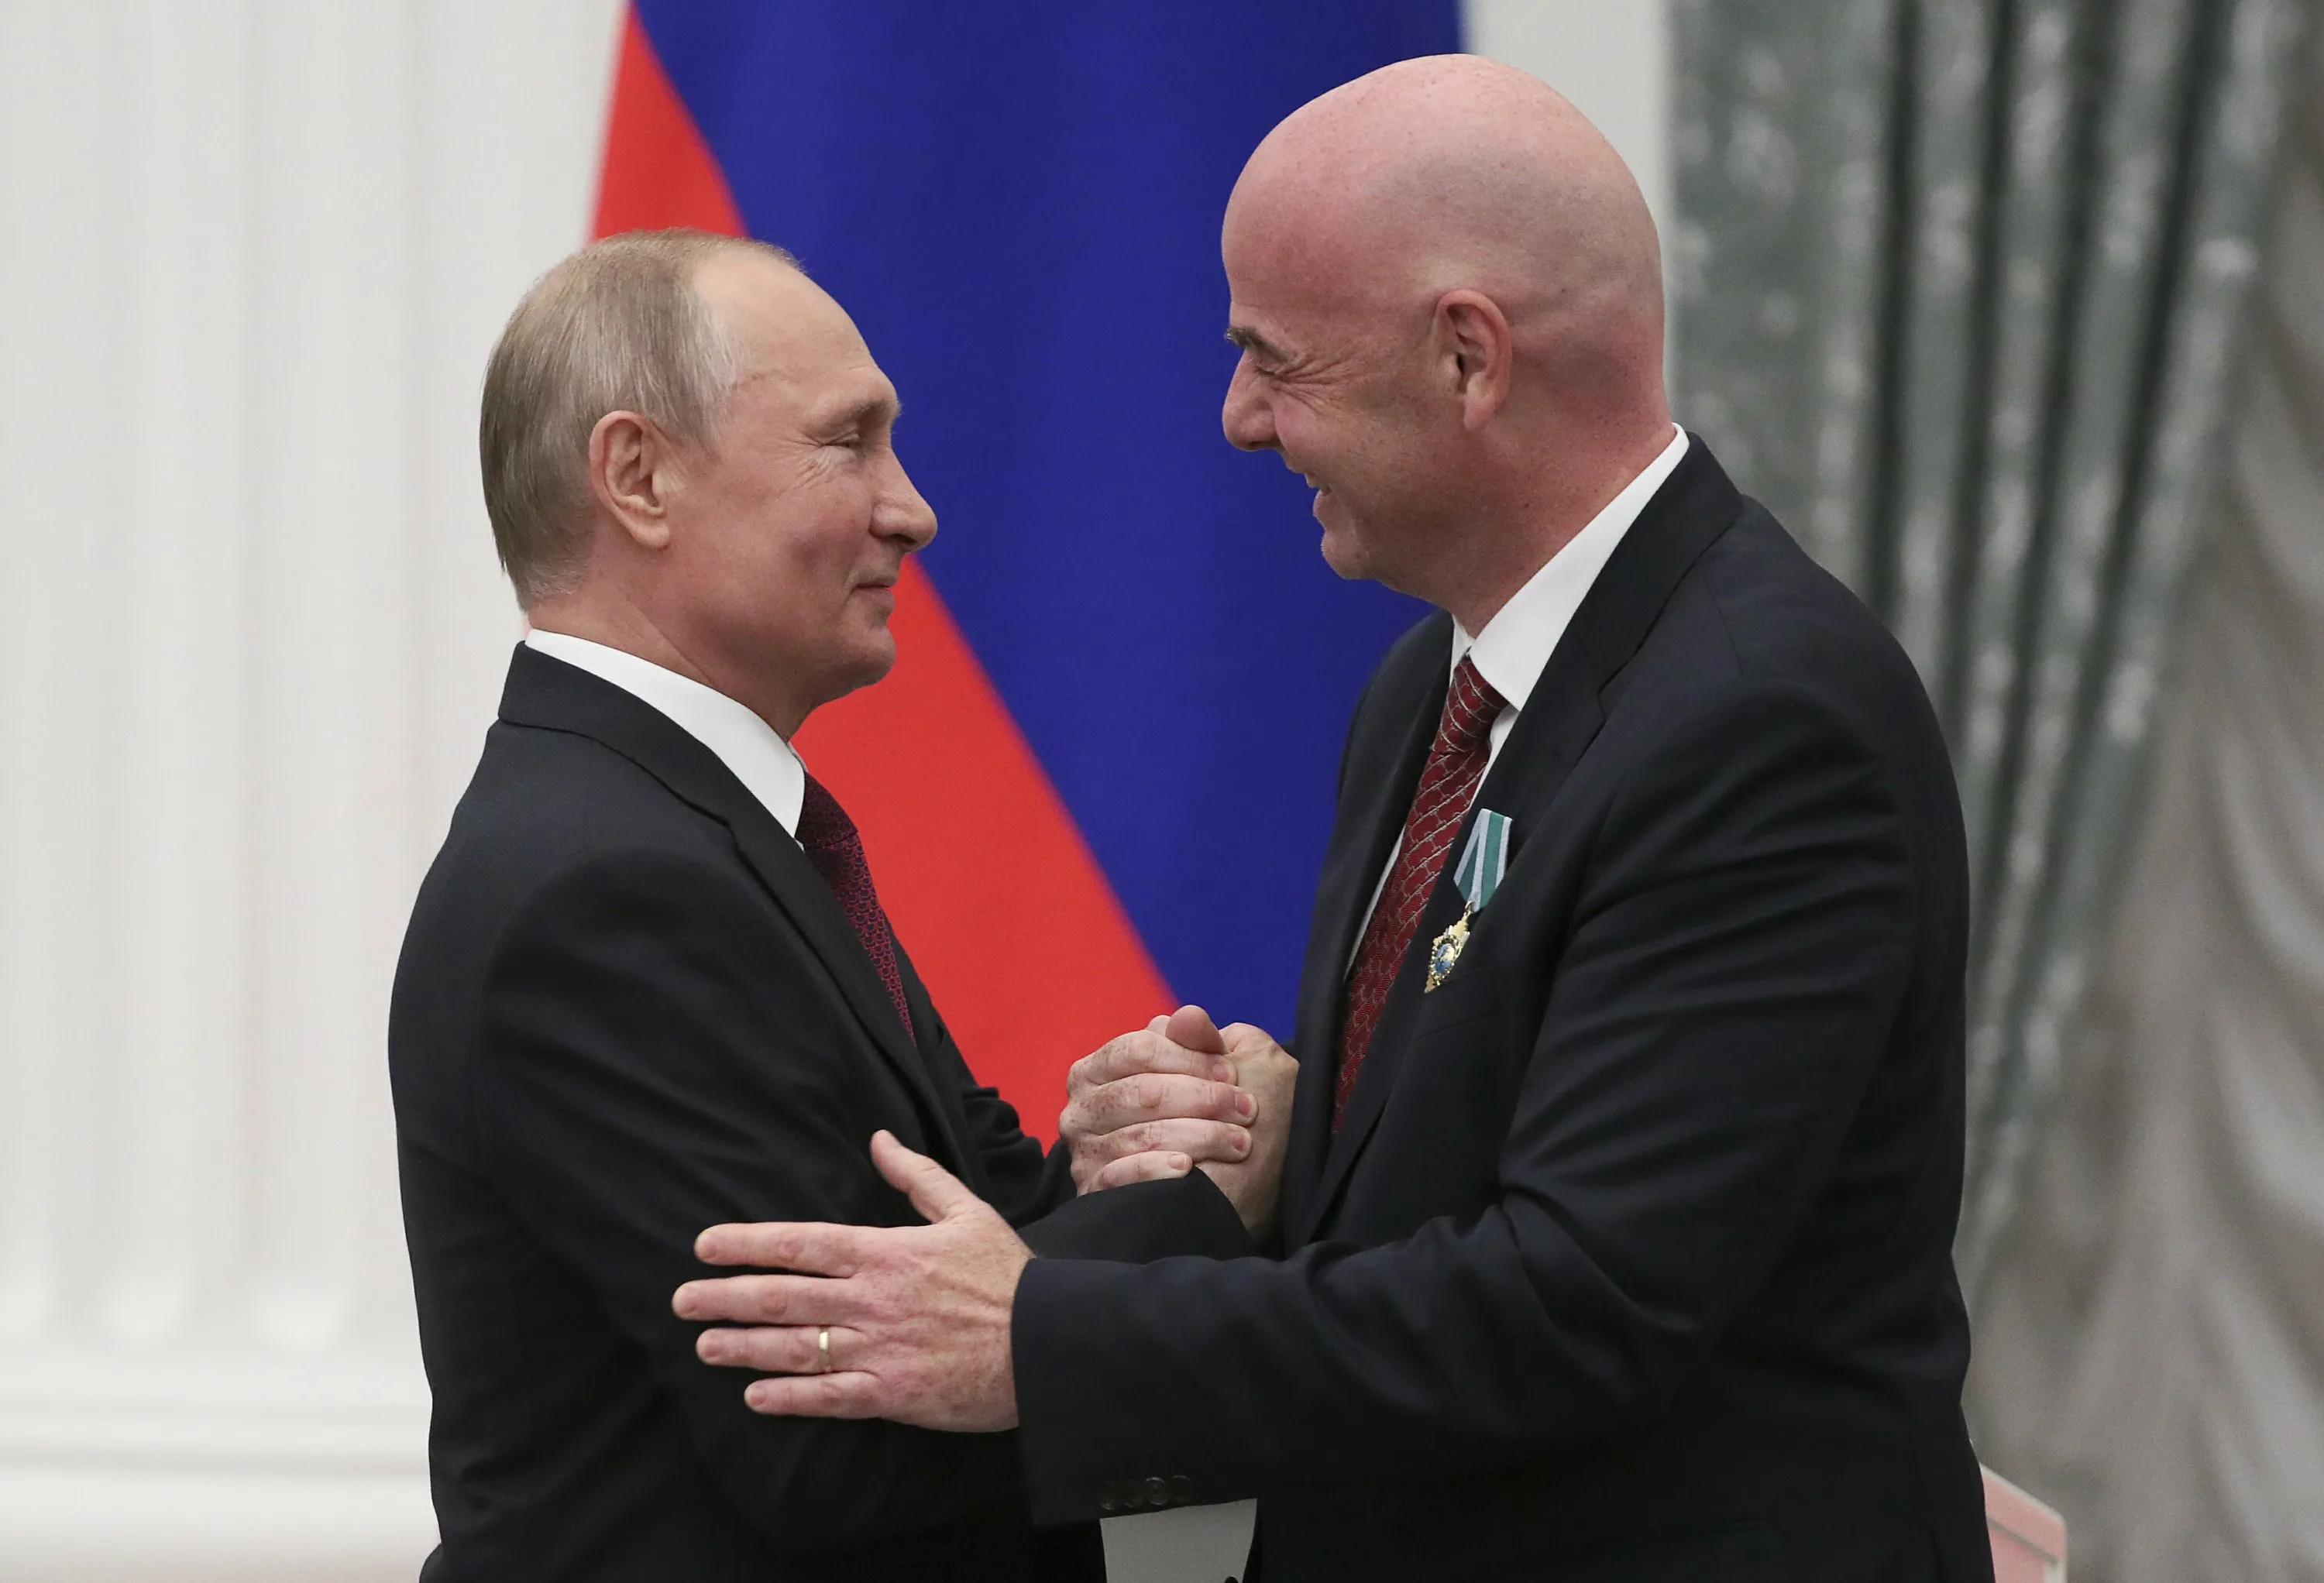 21 июня Путин проведёт встречу с главой ФИФА Инфантино